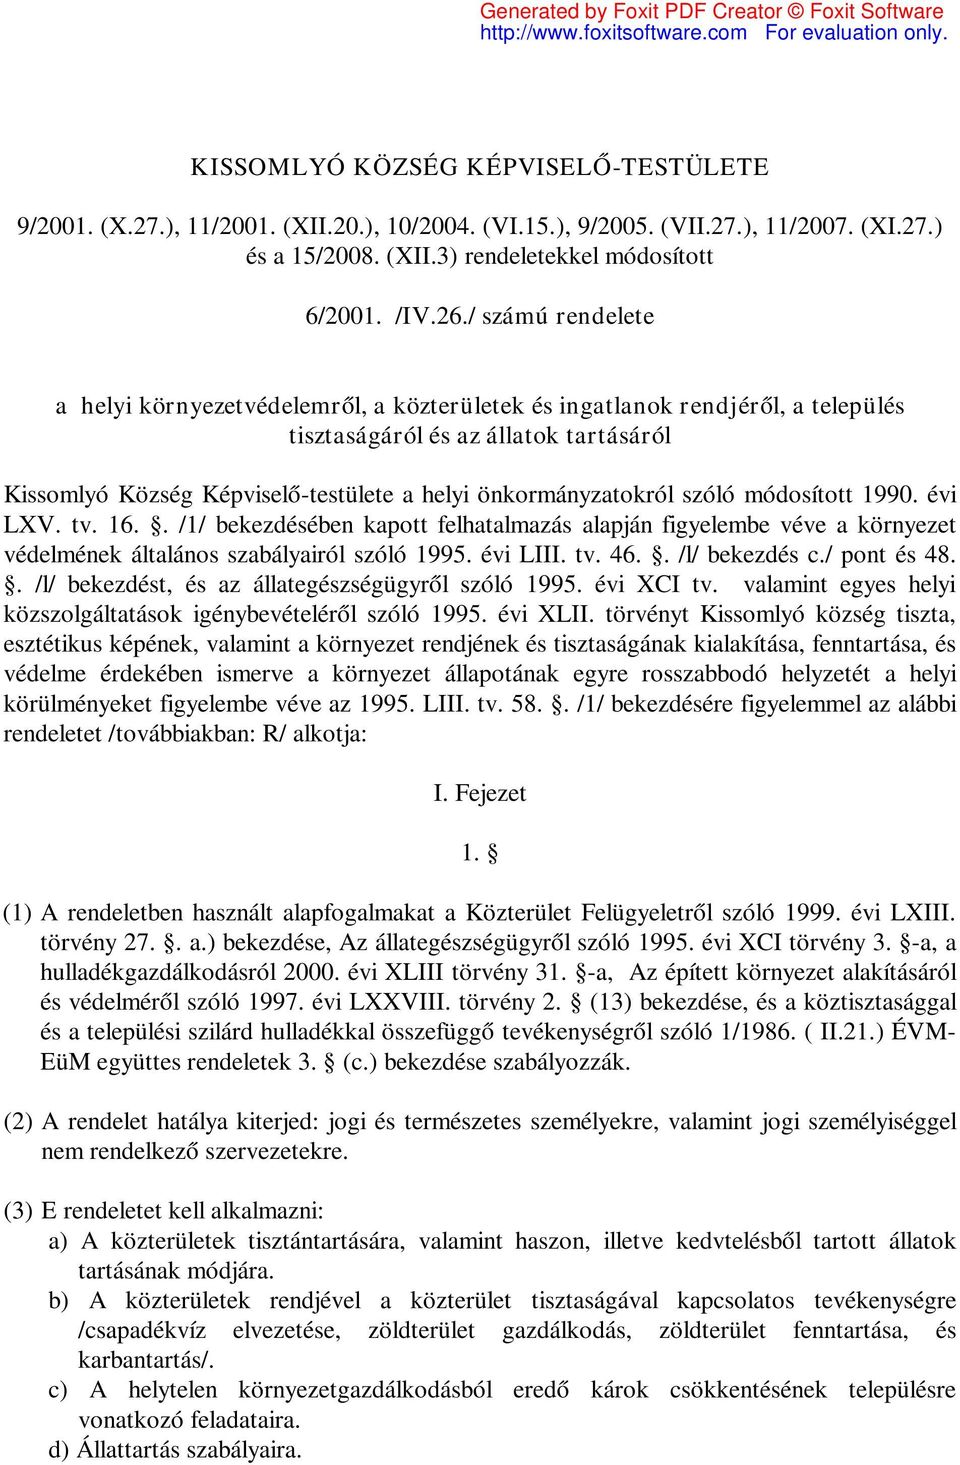 önkormányzatokról szóló módosított 1990. évi LXV. tv. 16.. /1/ bekezdésében kapott felhatalmazás alapján figyelembe véve a környezet védelmének általános szabályairól szóló 1995. évi LIII. tv. 46.